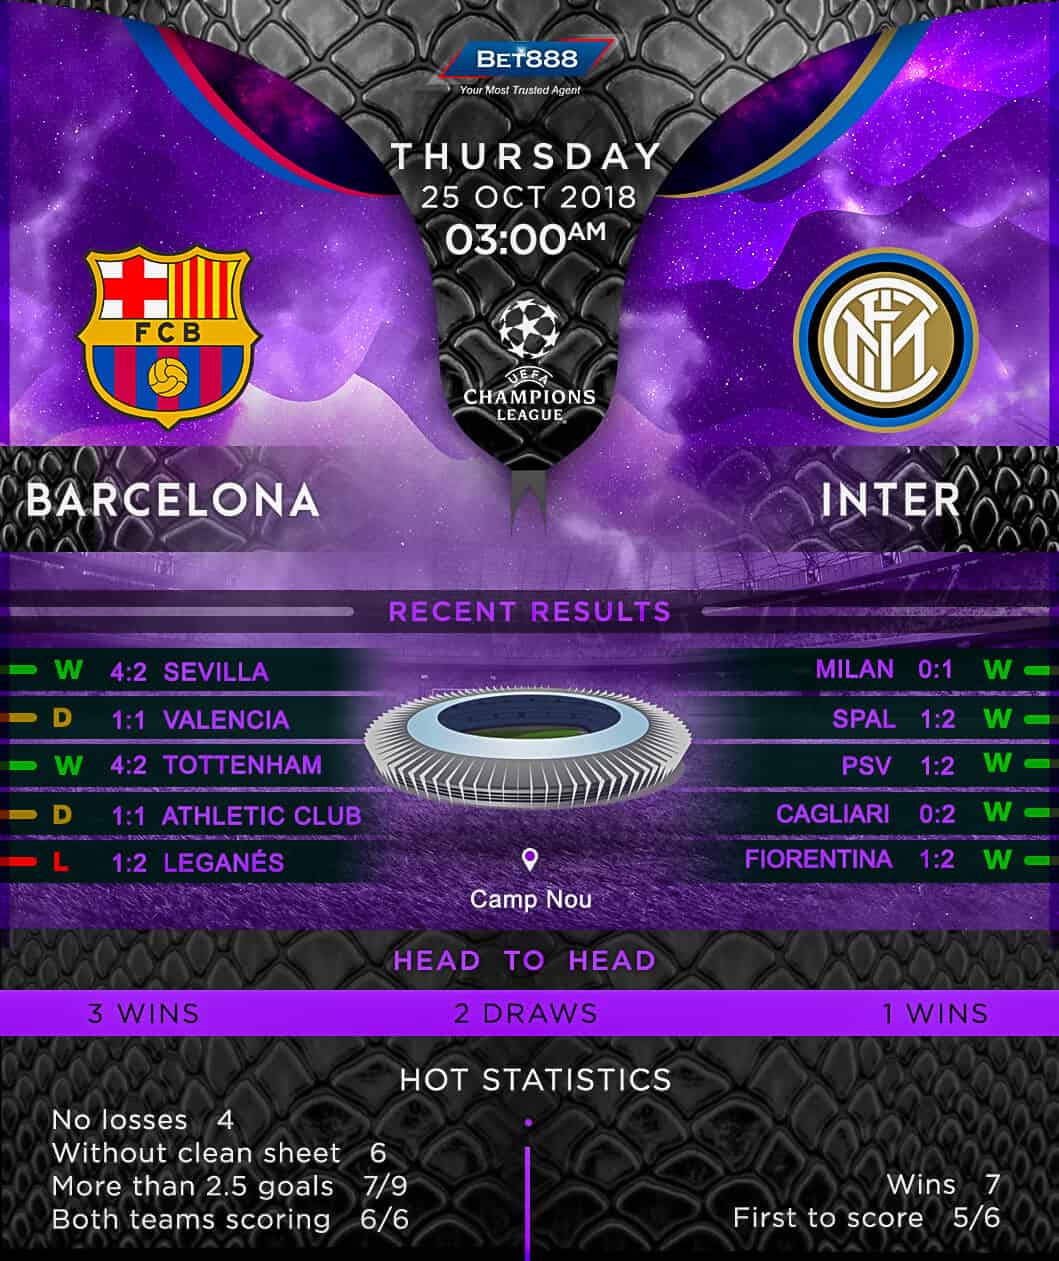 Barcelona vs Inter Milan 25/10/18